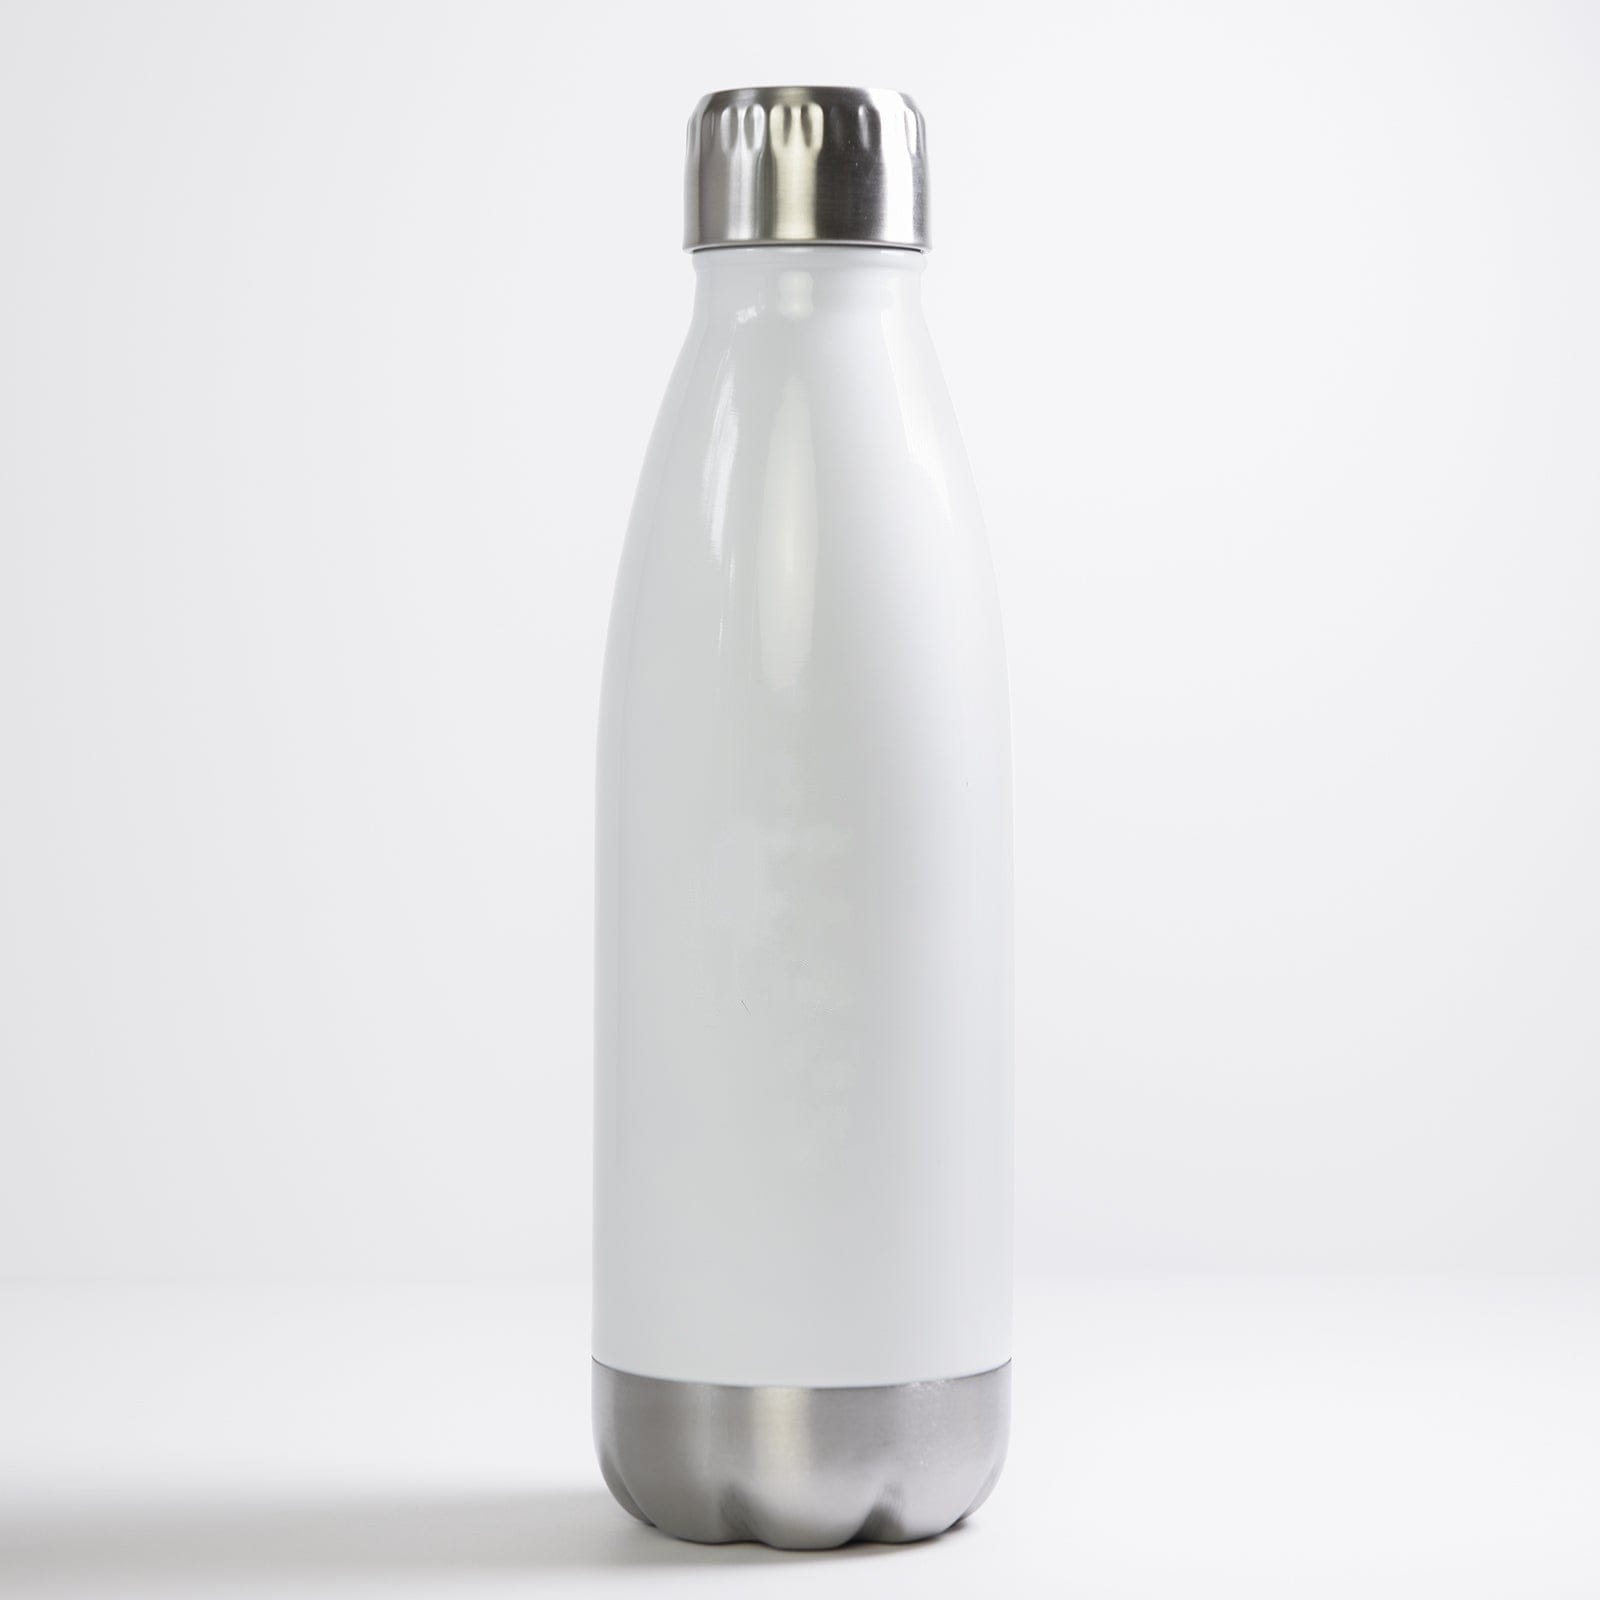 Custom Printed 17oz Steel Water Bottles